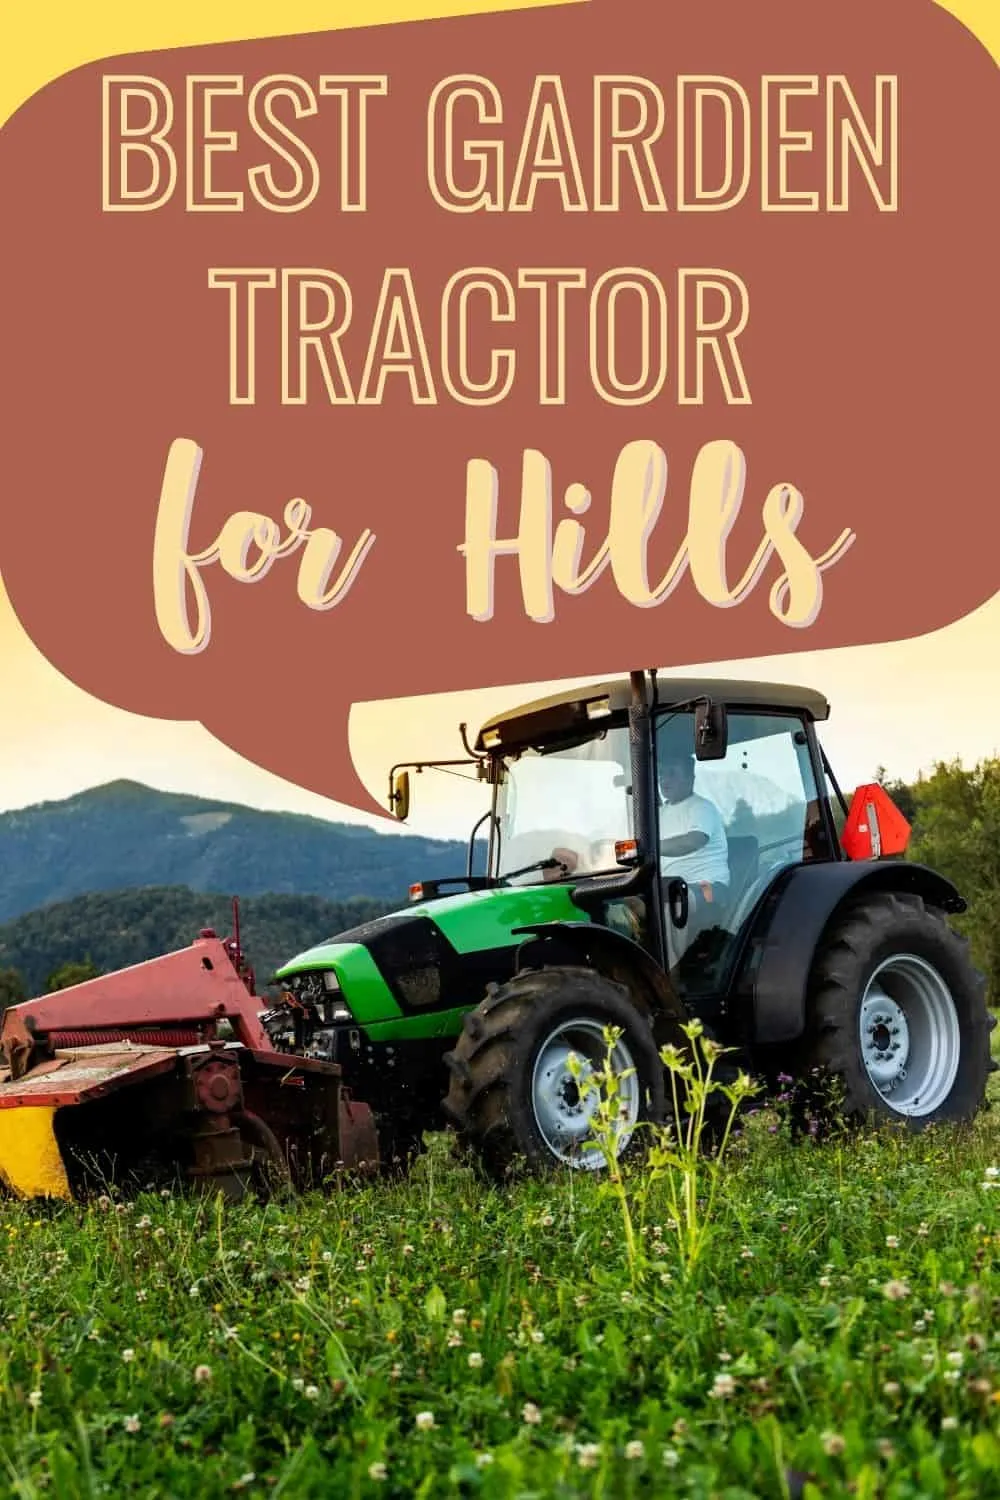 Best garden tractor for hills